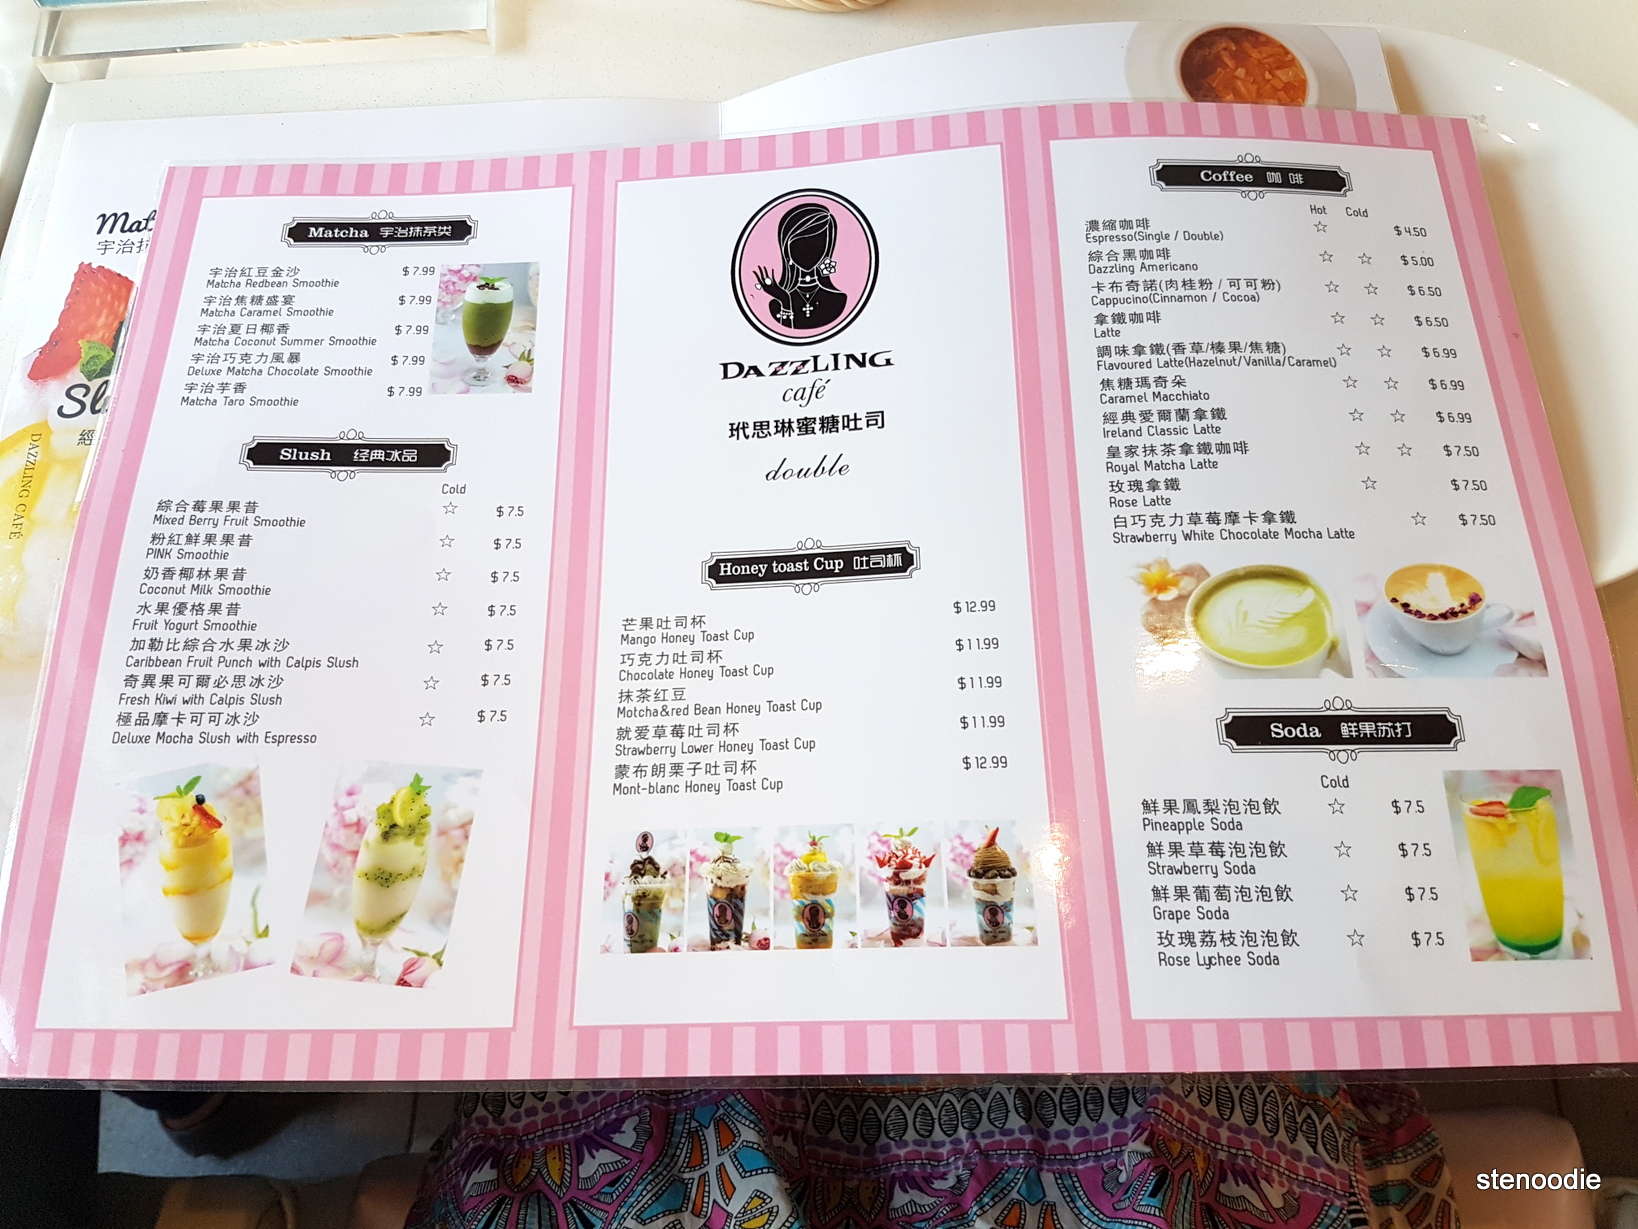  Dazzling Café menus